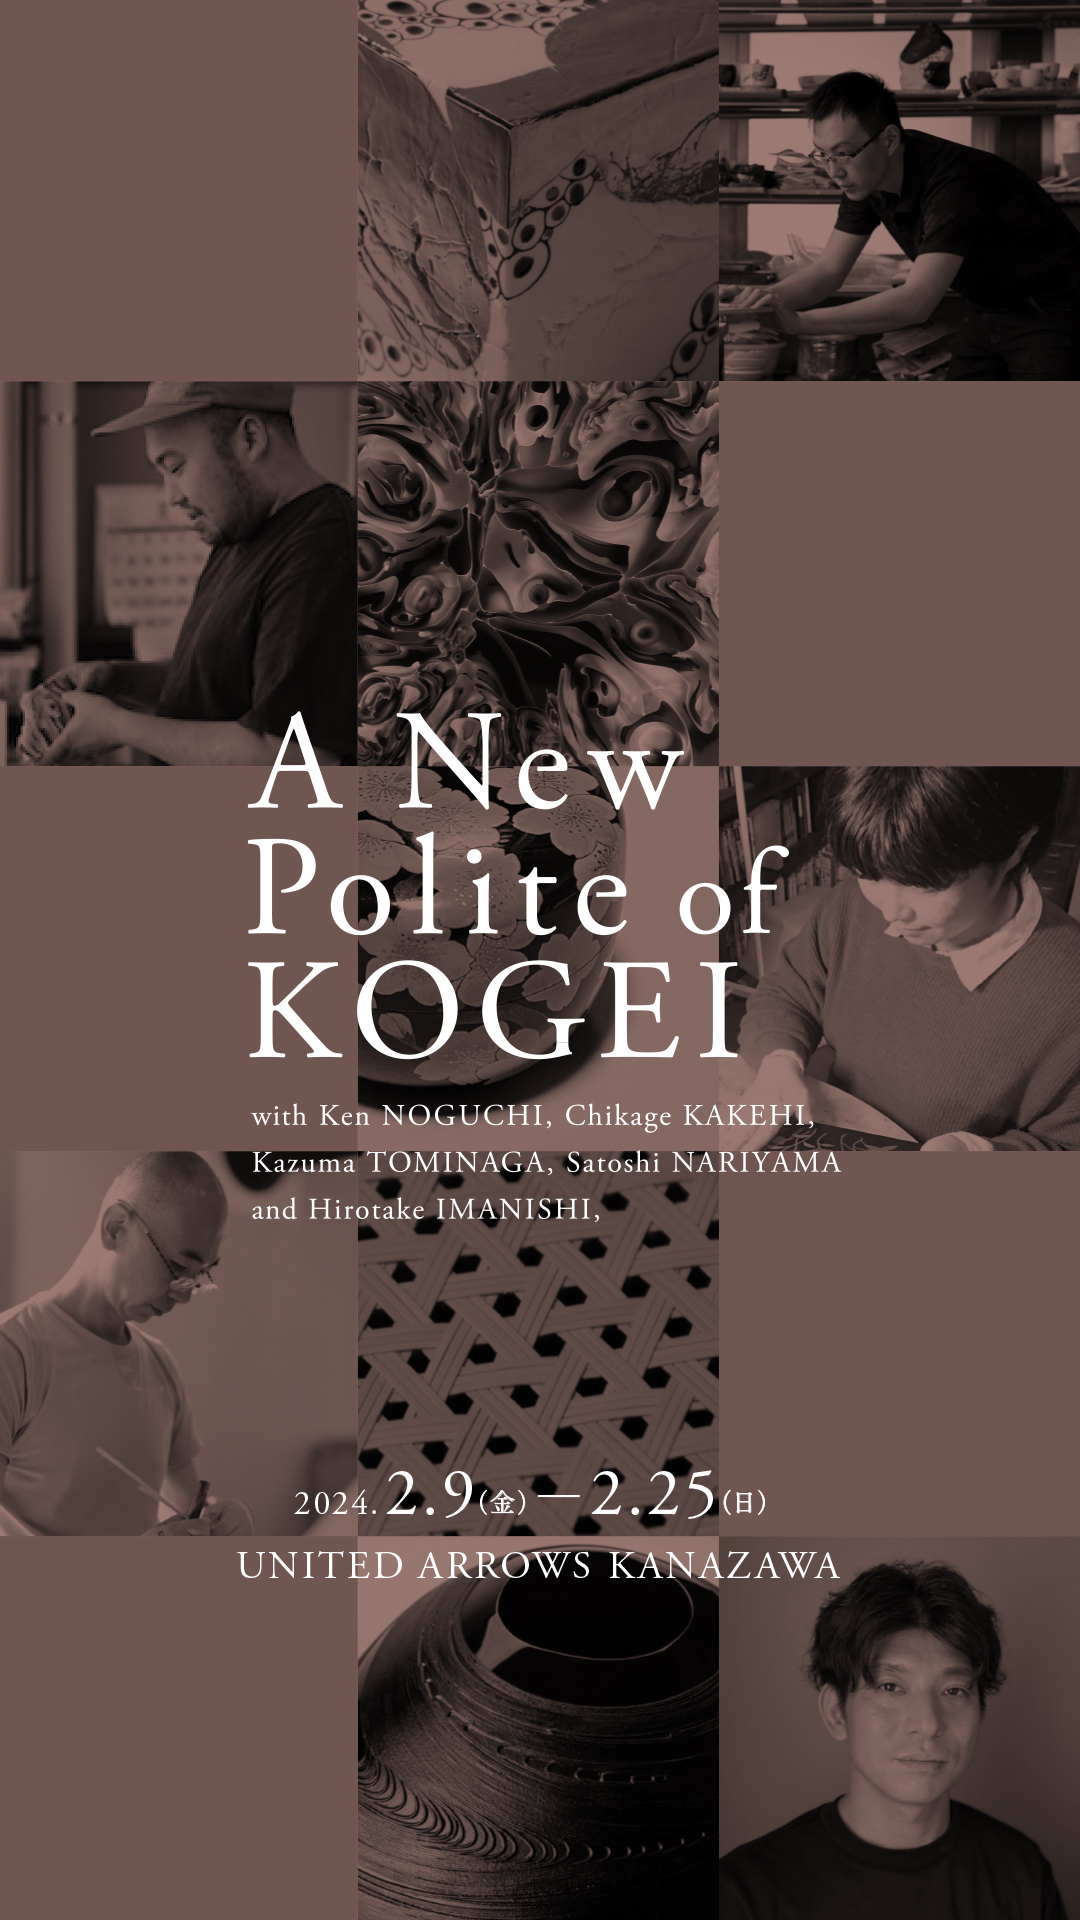 「金沢、つくるプロジェクト02 A New Polite of KOGEI」作品…